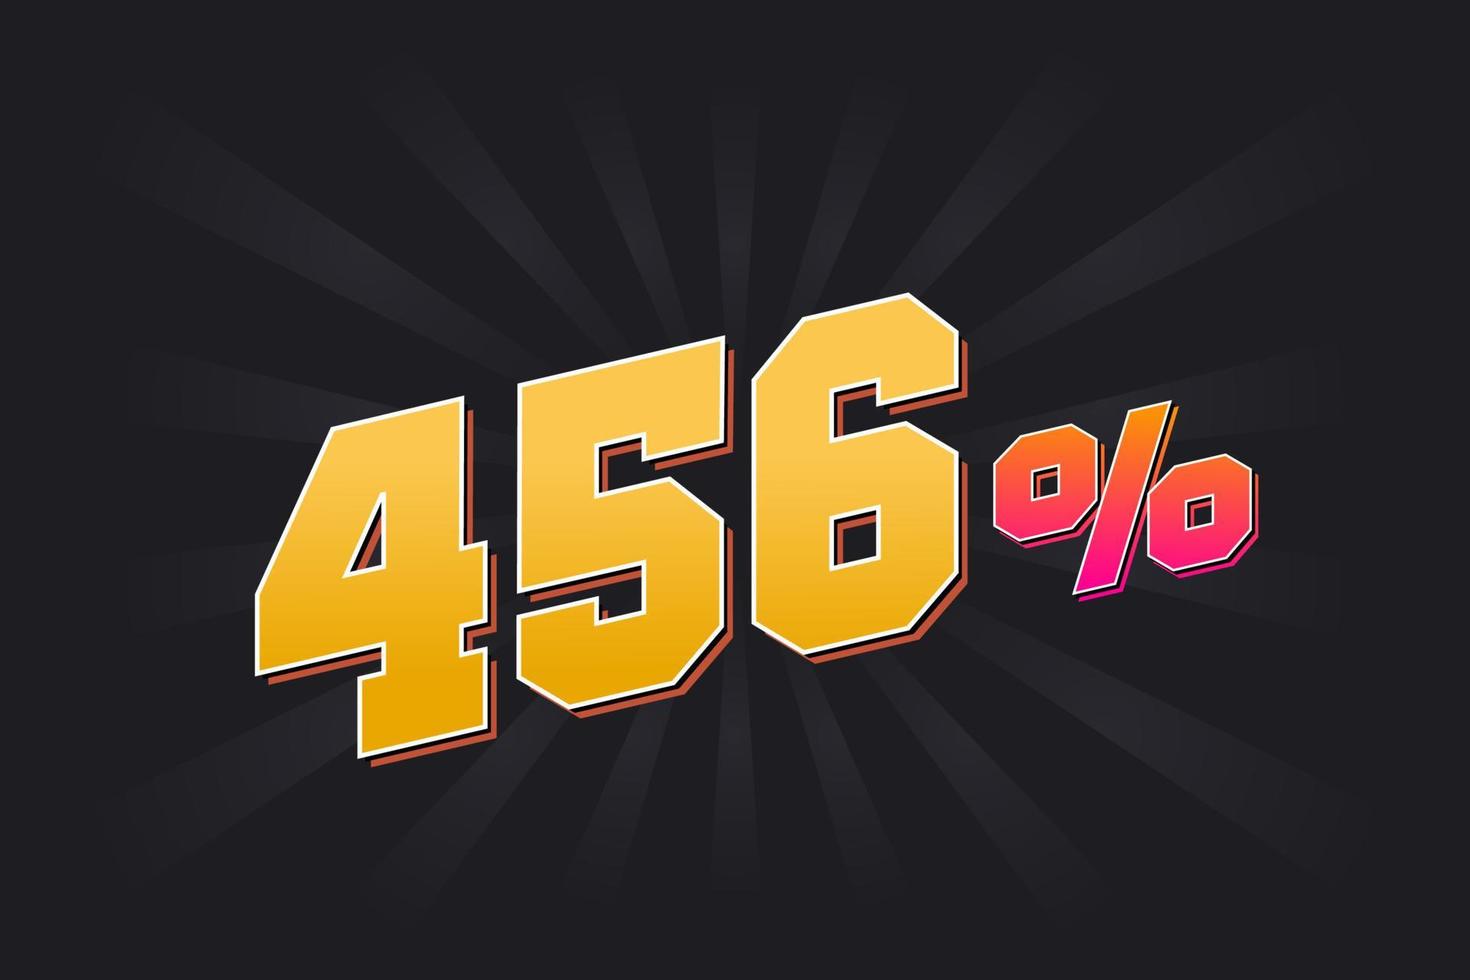 456 rabatt baner med mörk bakgrund och gul text. 456 procent försäljning PR design. vektor